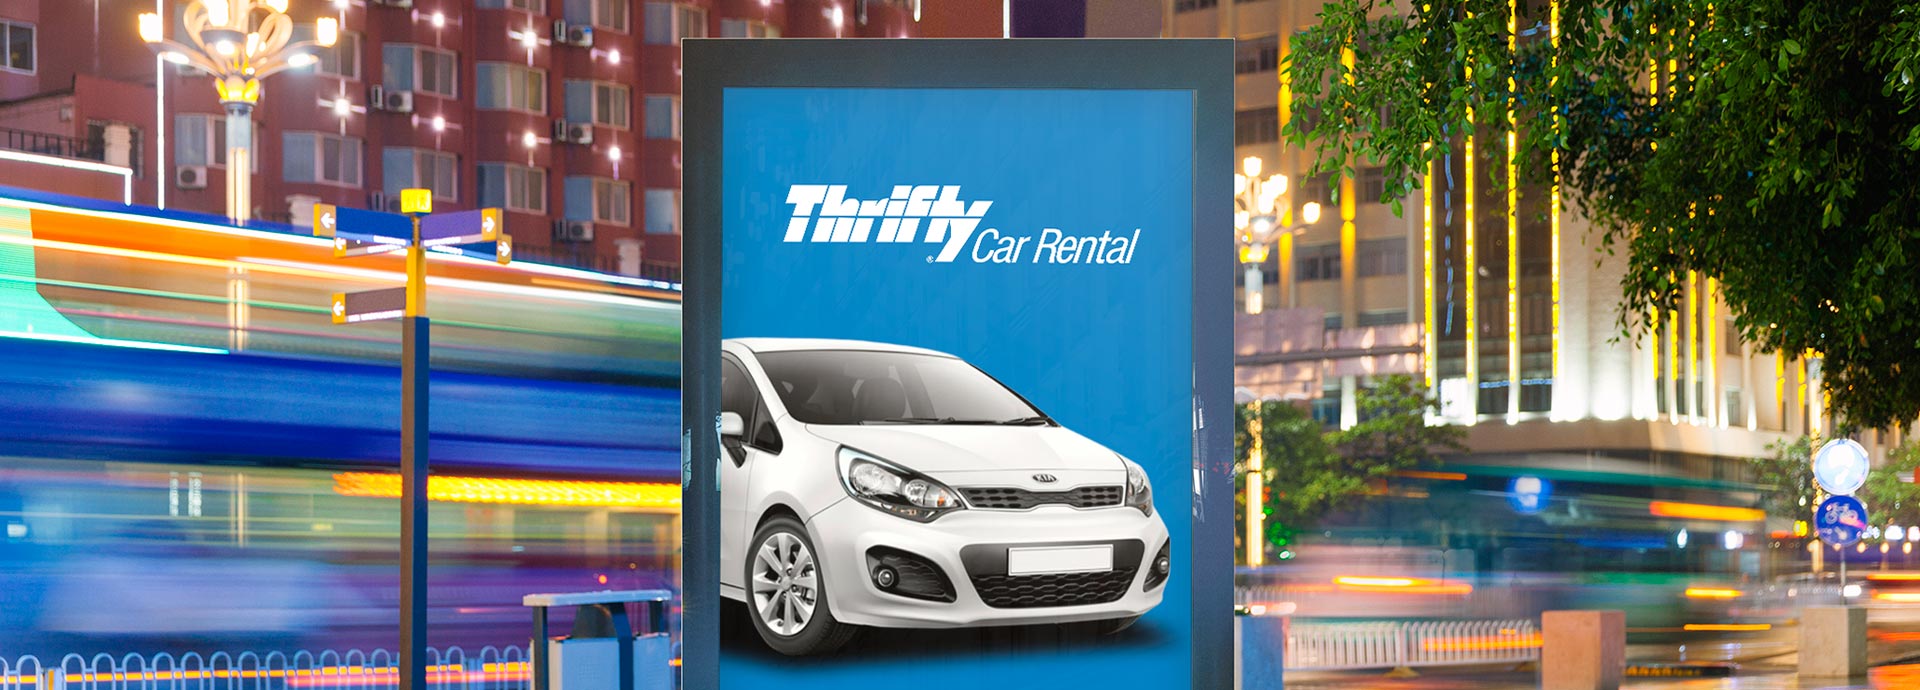 Thrifty Rent-a-Car - Find Best Car Rental Deals